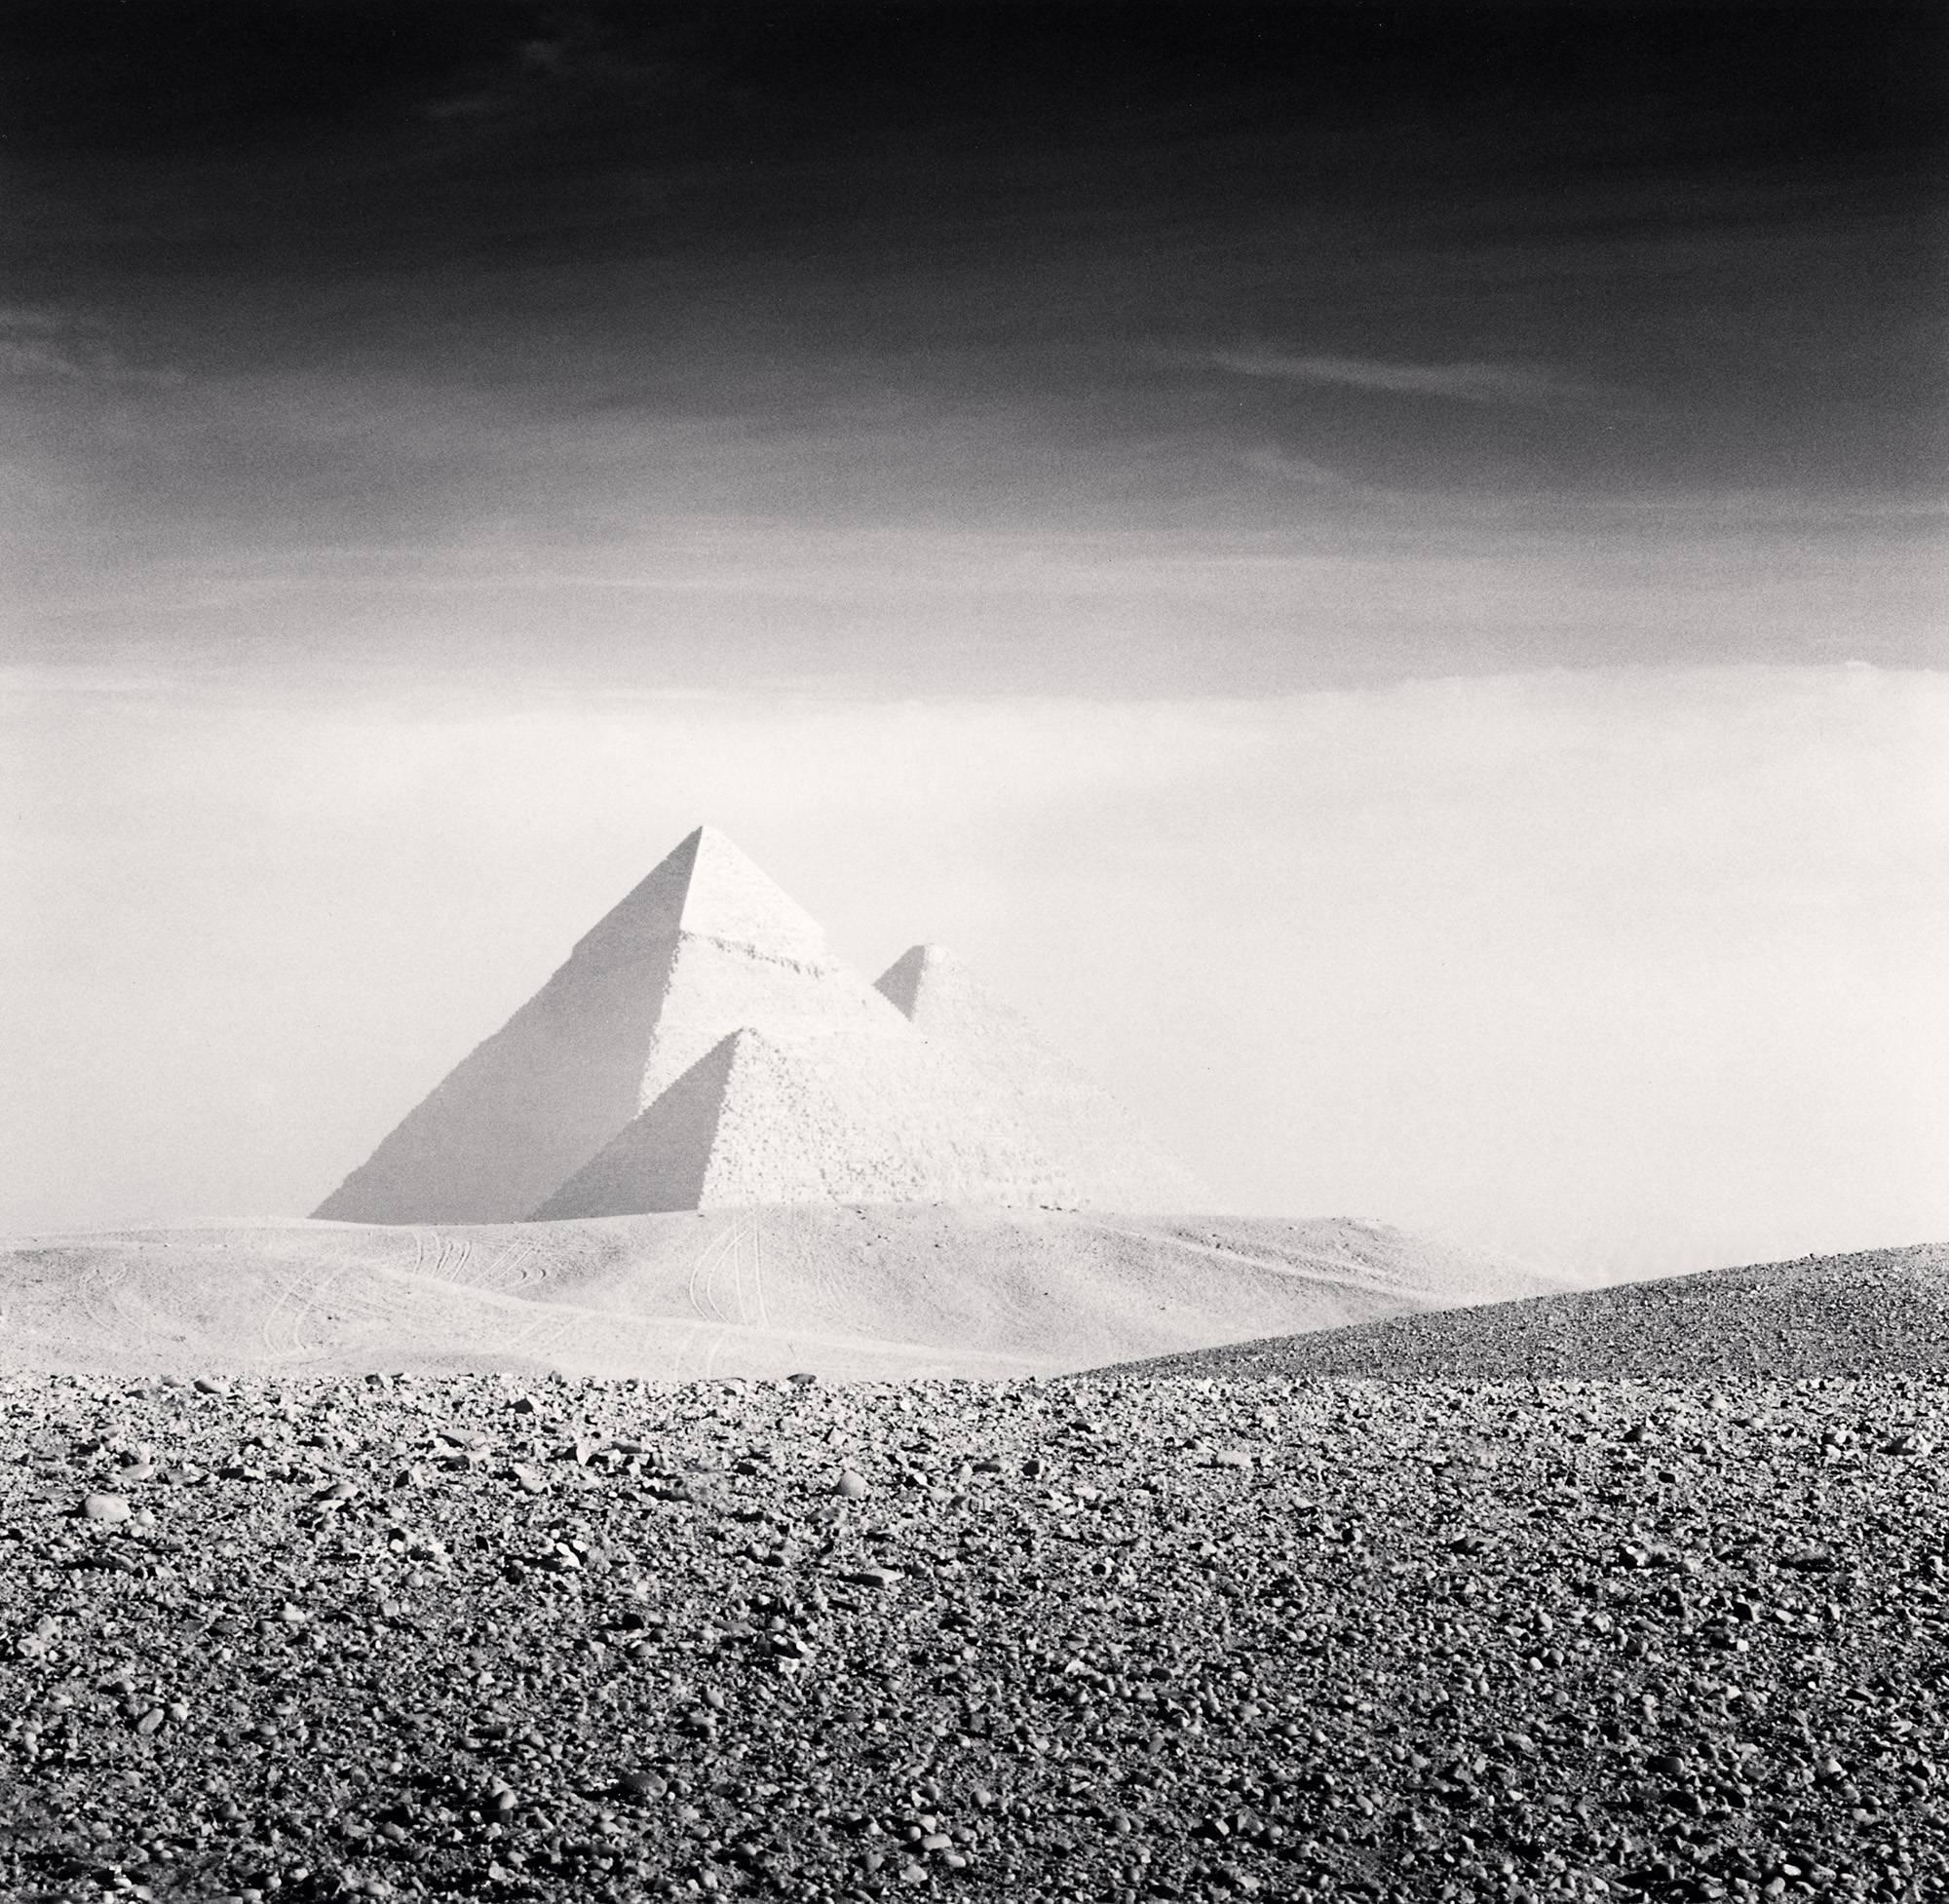 Black and White Photograph Michael Kenna - Pyramids de Giza, Étude 3, Cairo, 2009